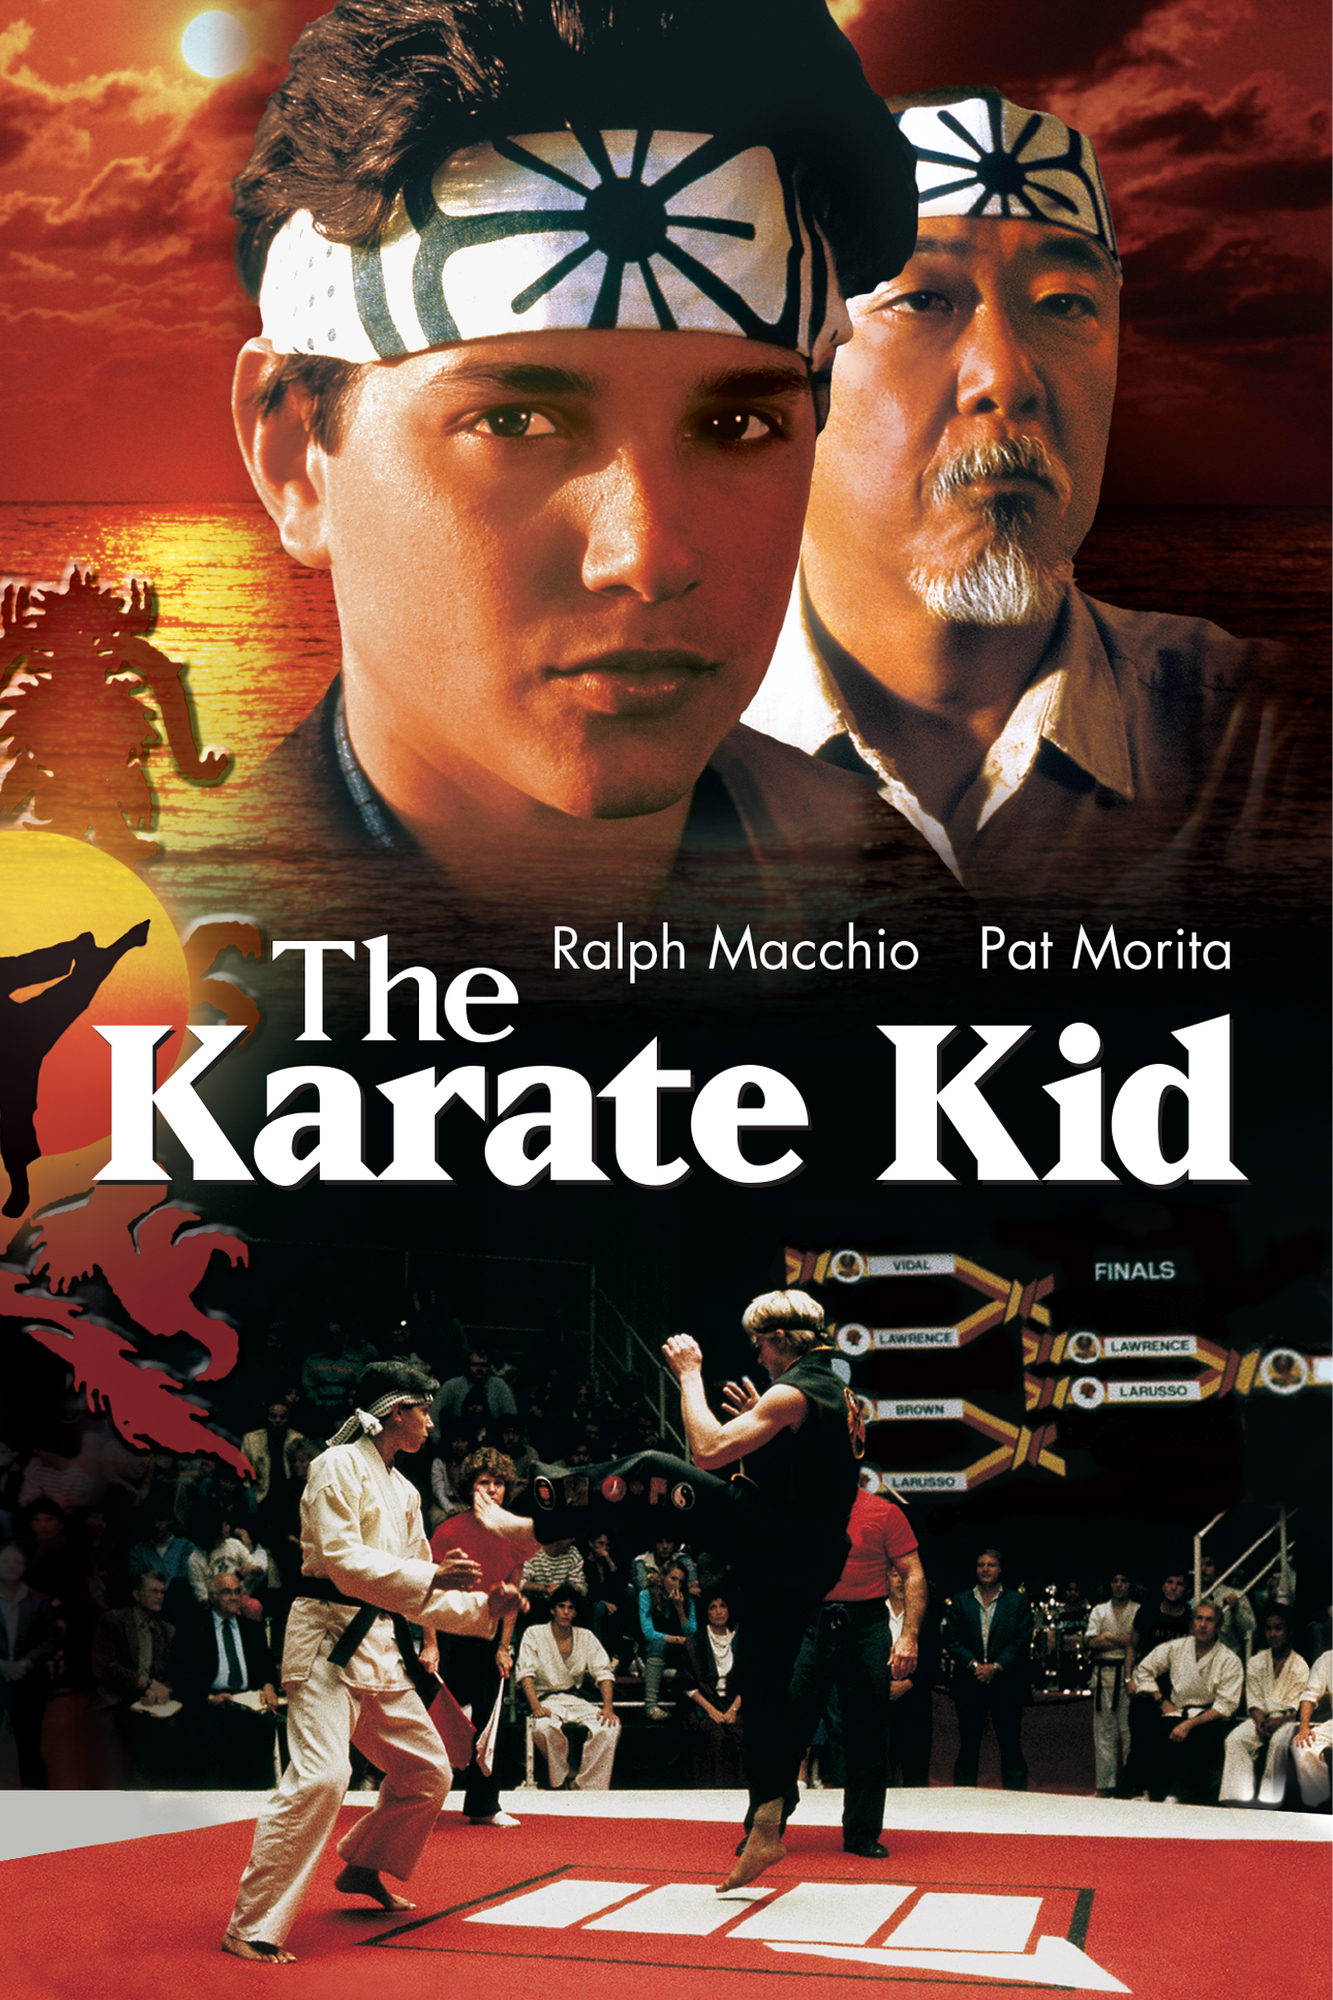 karate kid keyart